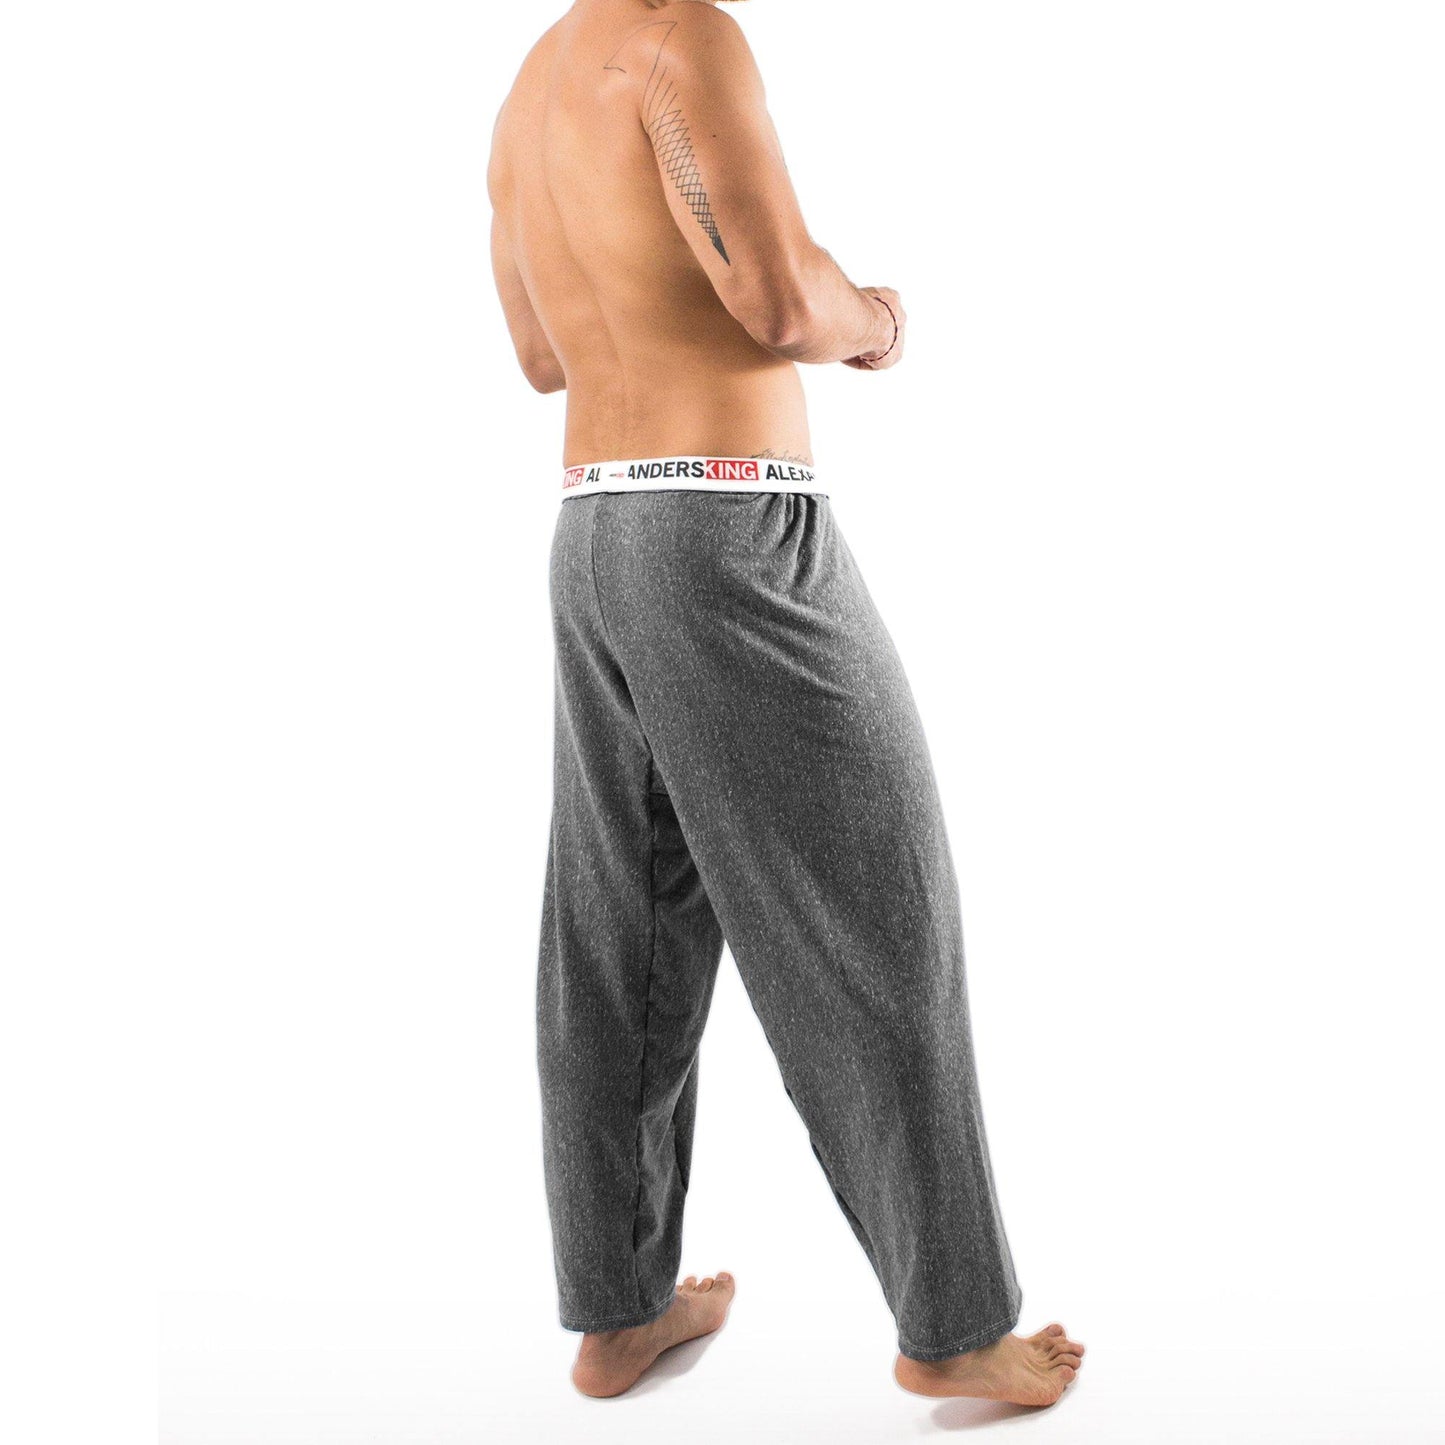 PP0001- Pantalón Pijama Peace - AlexandersKing Underwear